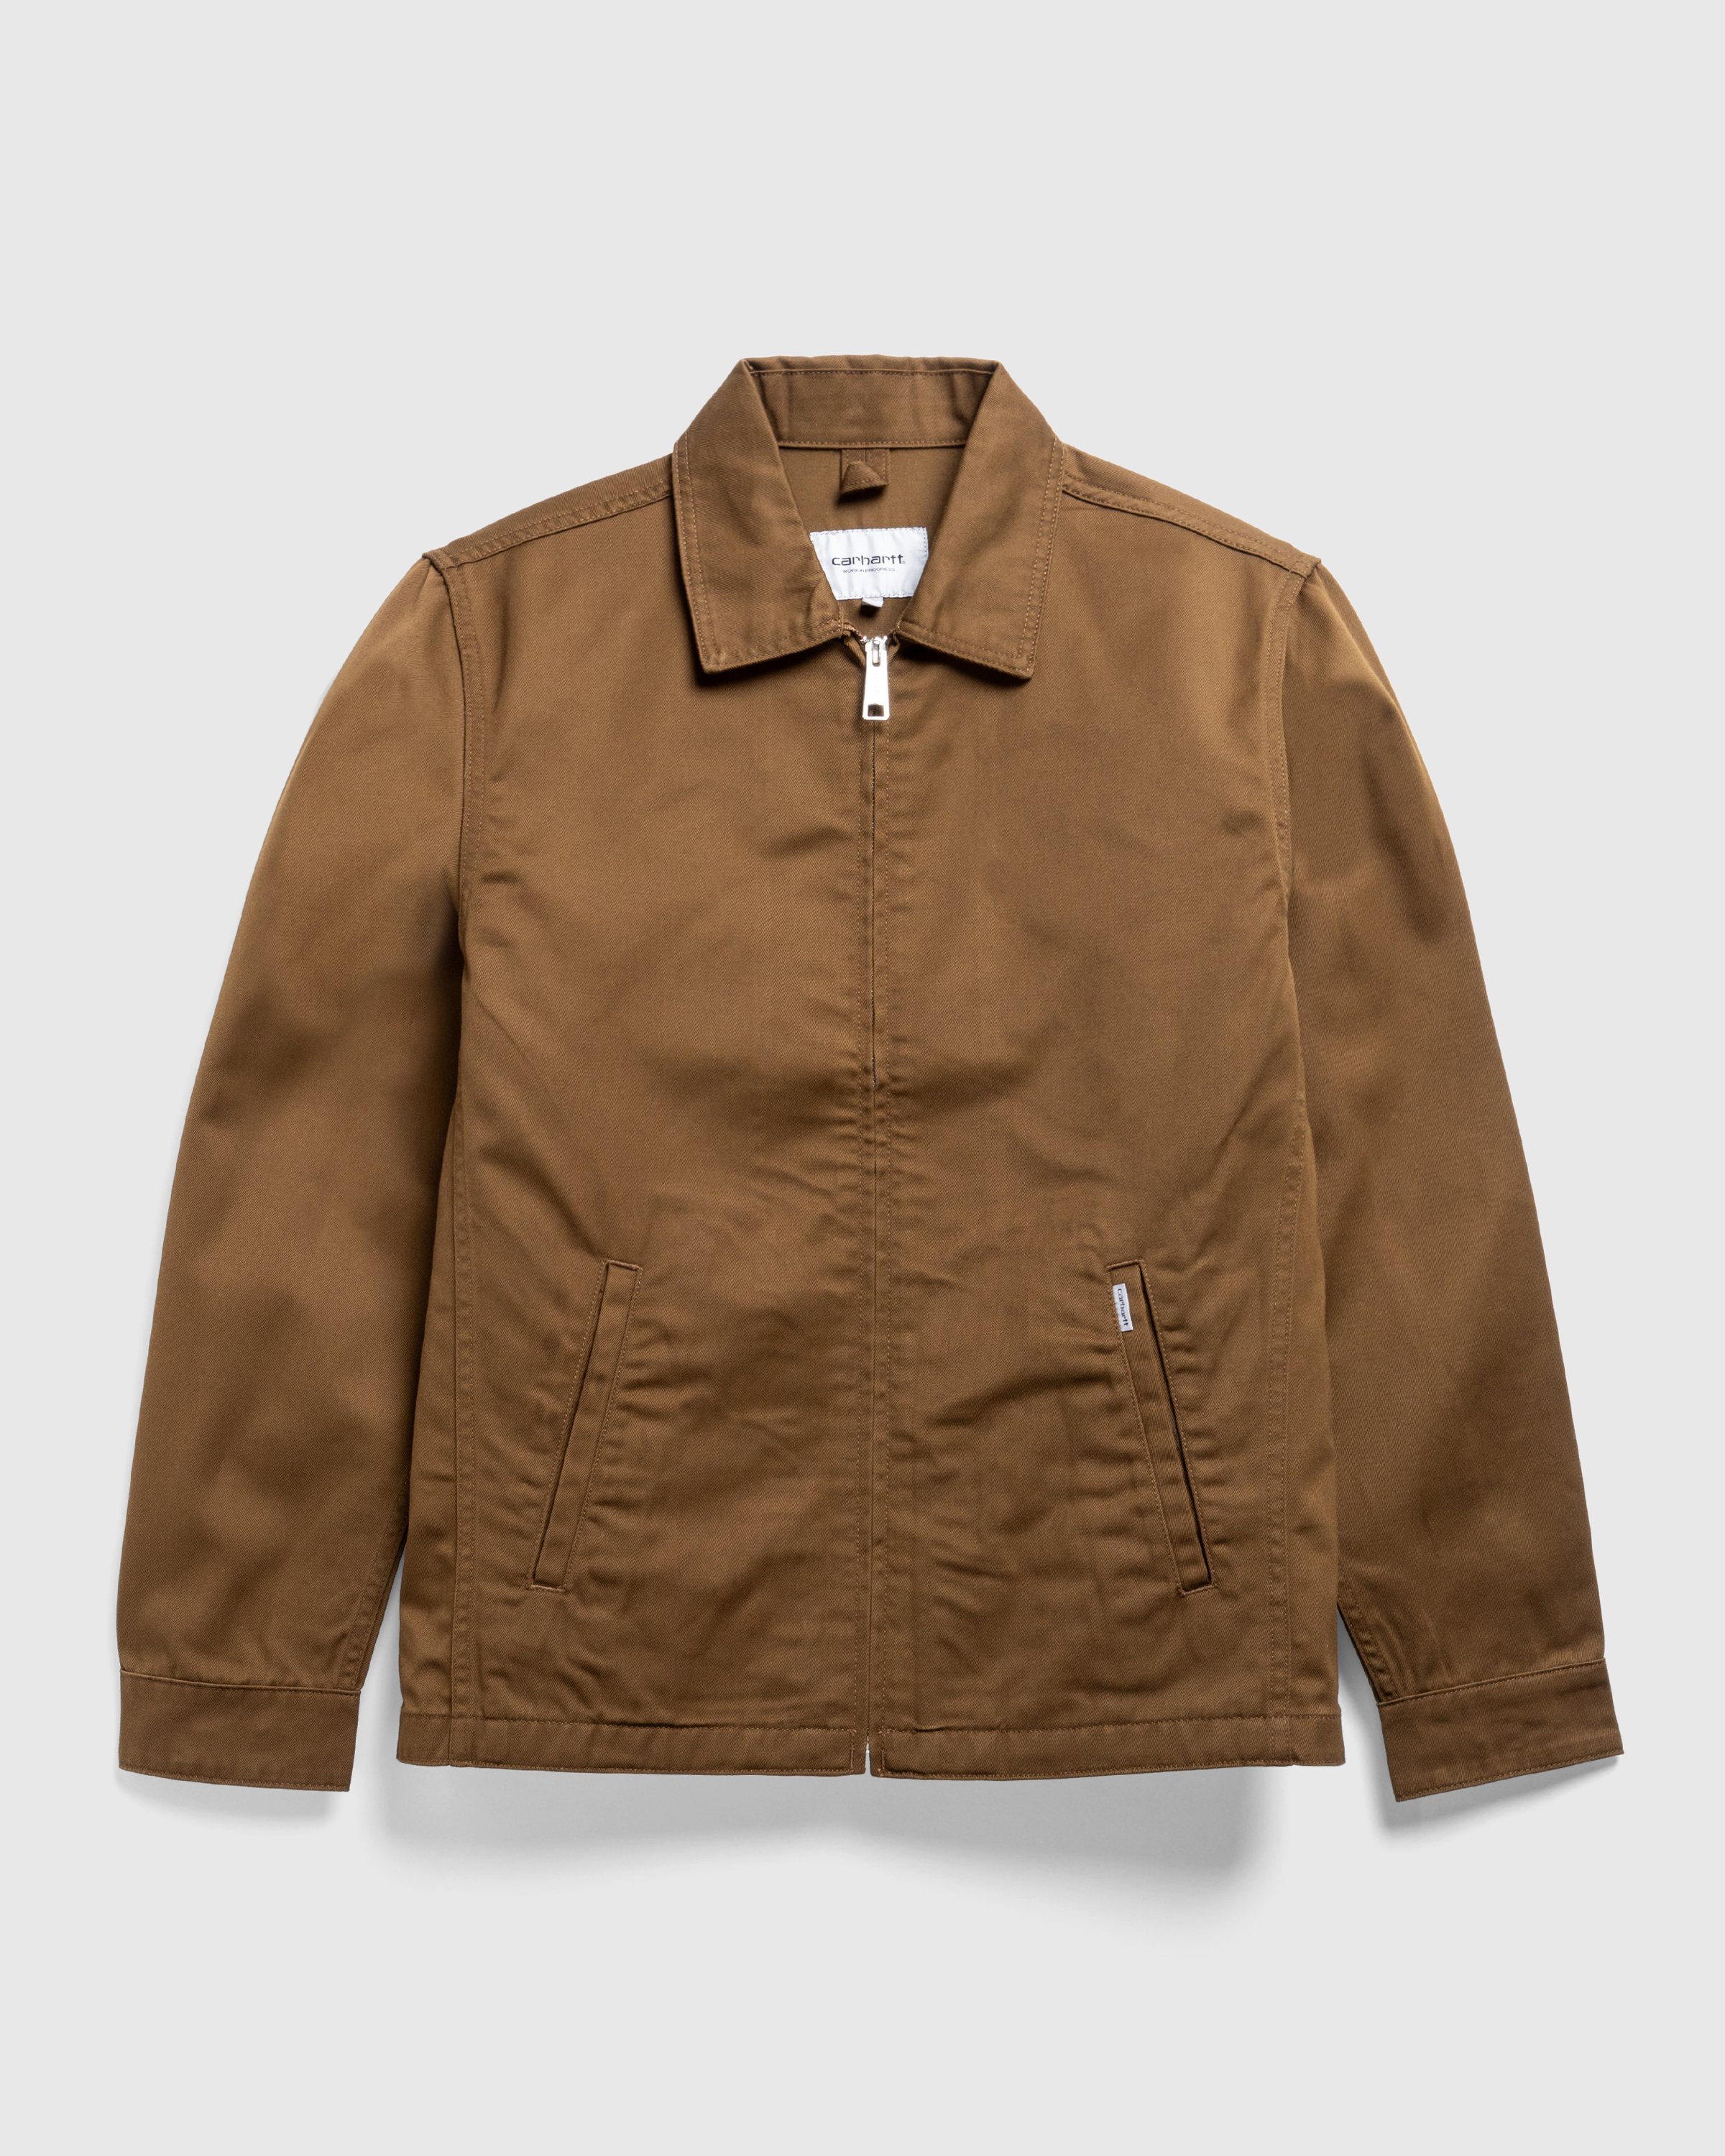 Carhartt WIP - Modular Jacket Lumber /rinsed - Clothing - Brown - Image 1